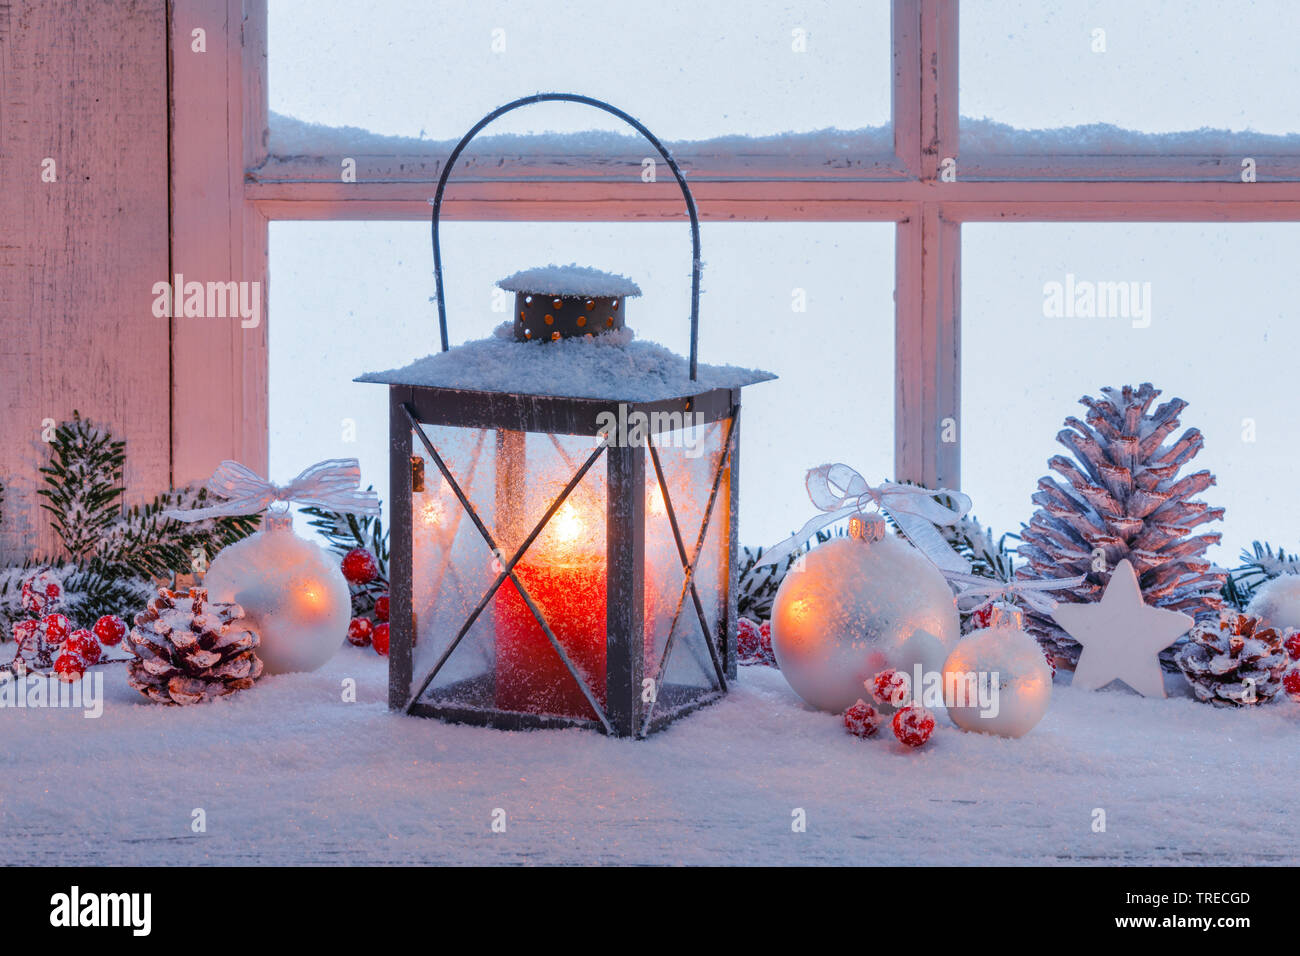 lantern with christmas decoration on a ledge, Switzerland Stock Photo